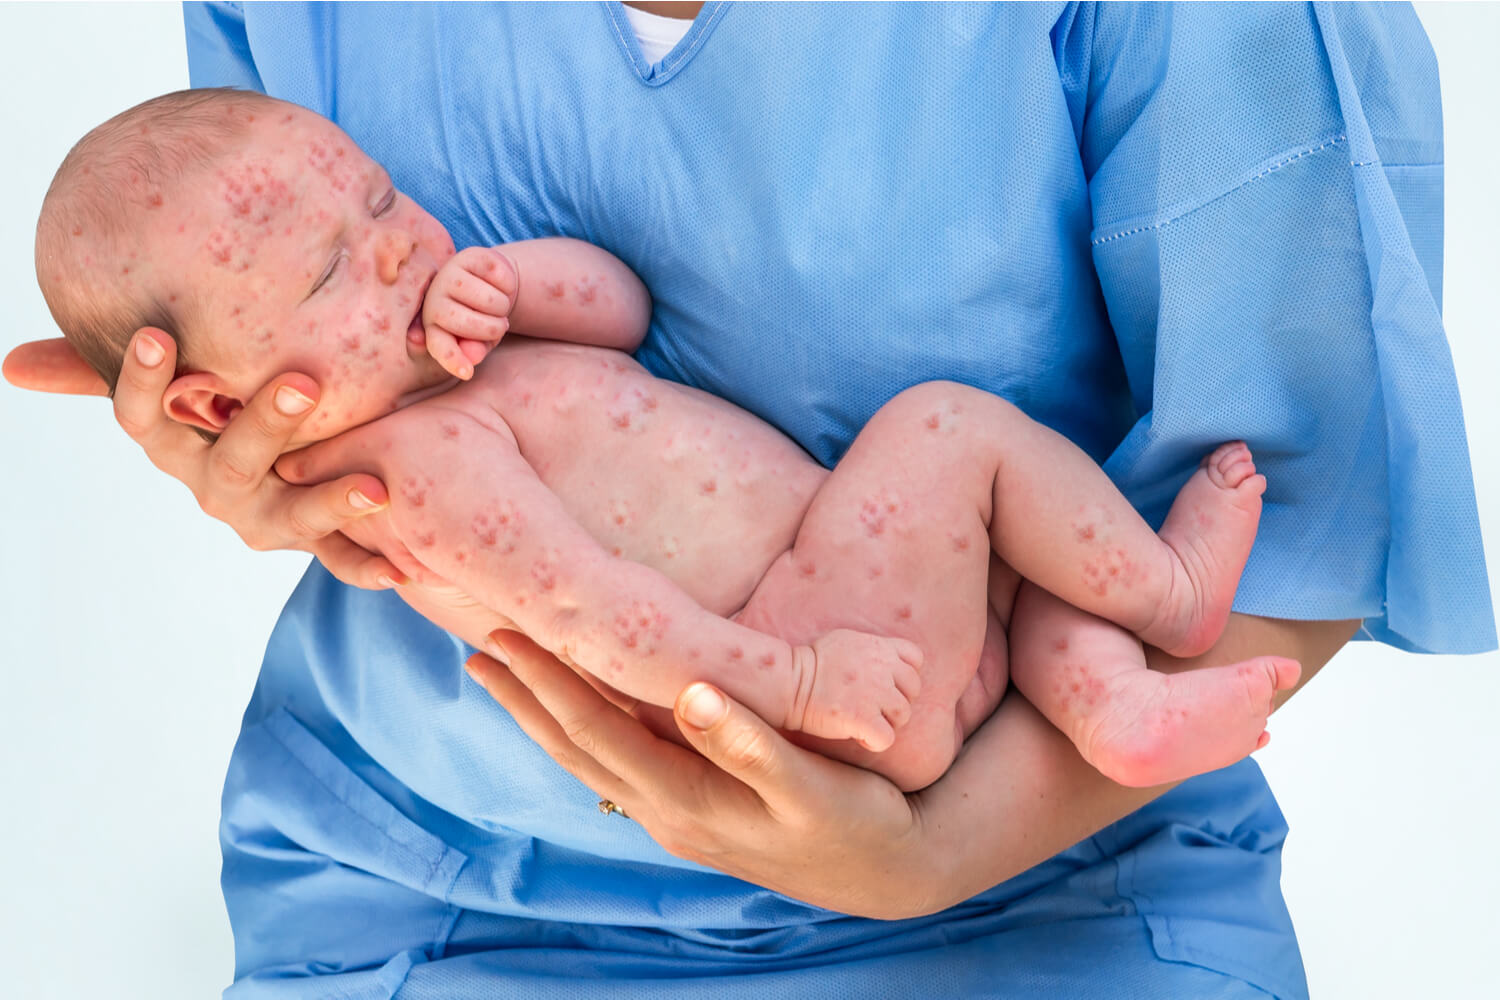 newborn baby having chickenpox